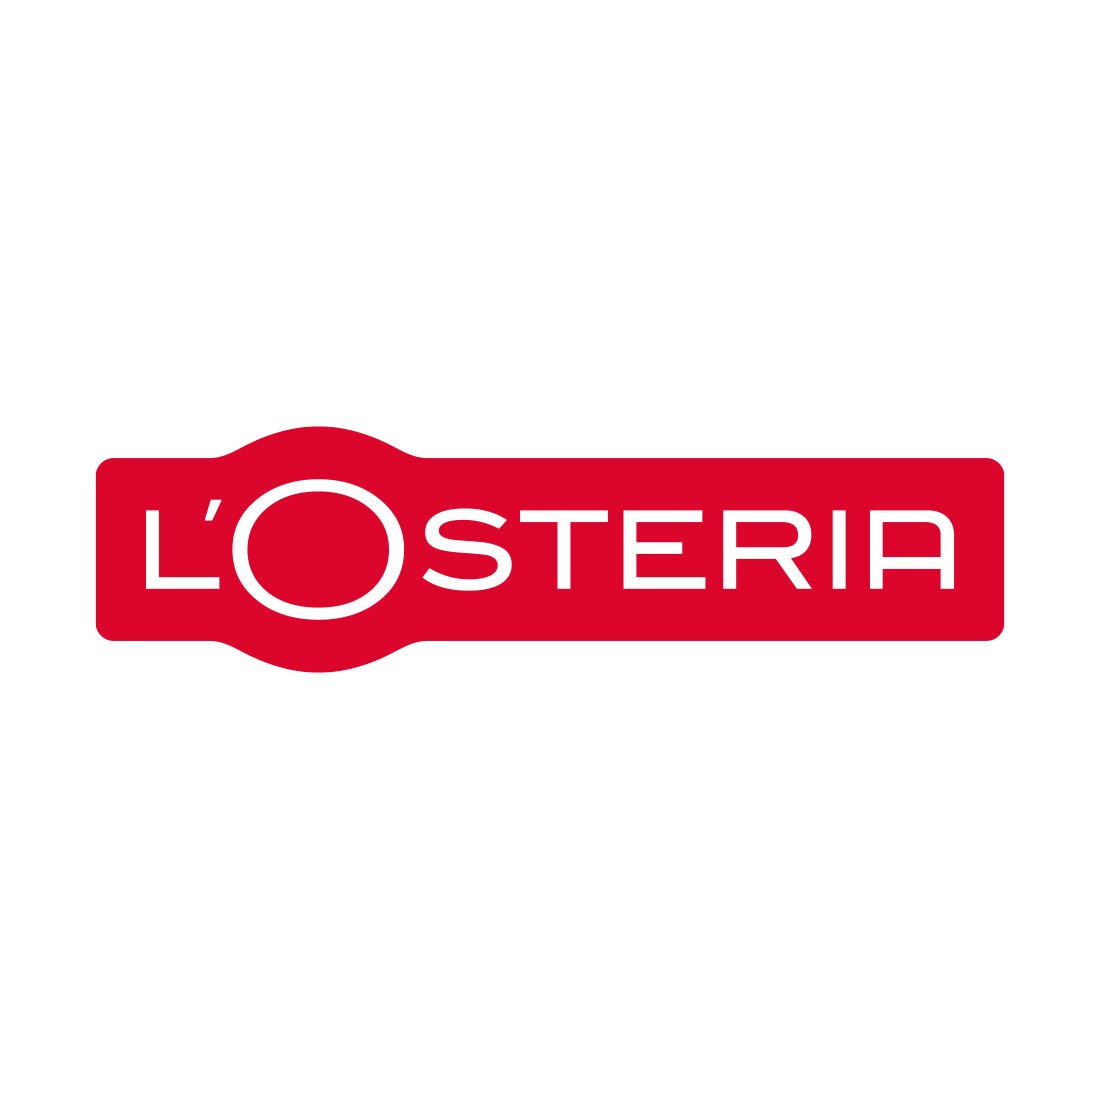 Logo losteria-restaurant-pizza e pasta-logo